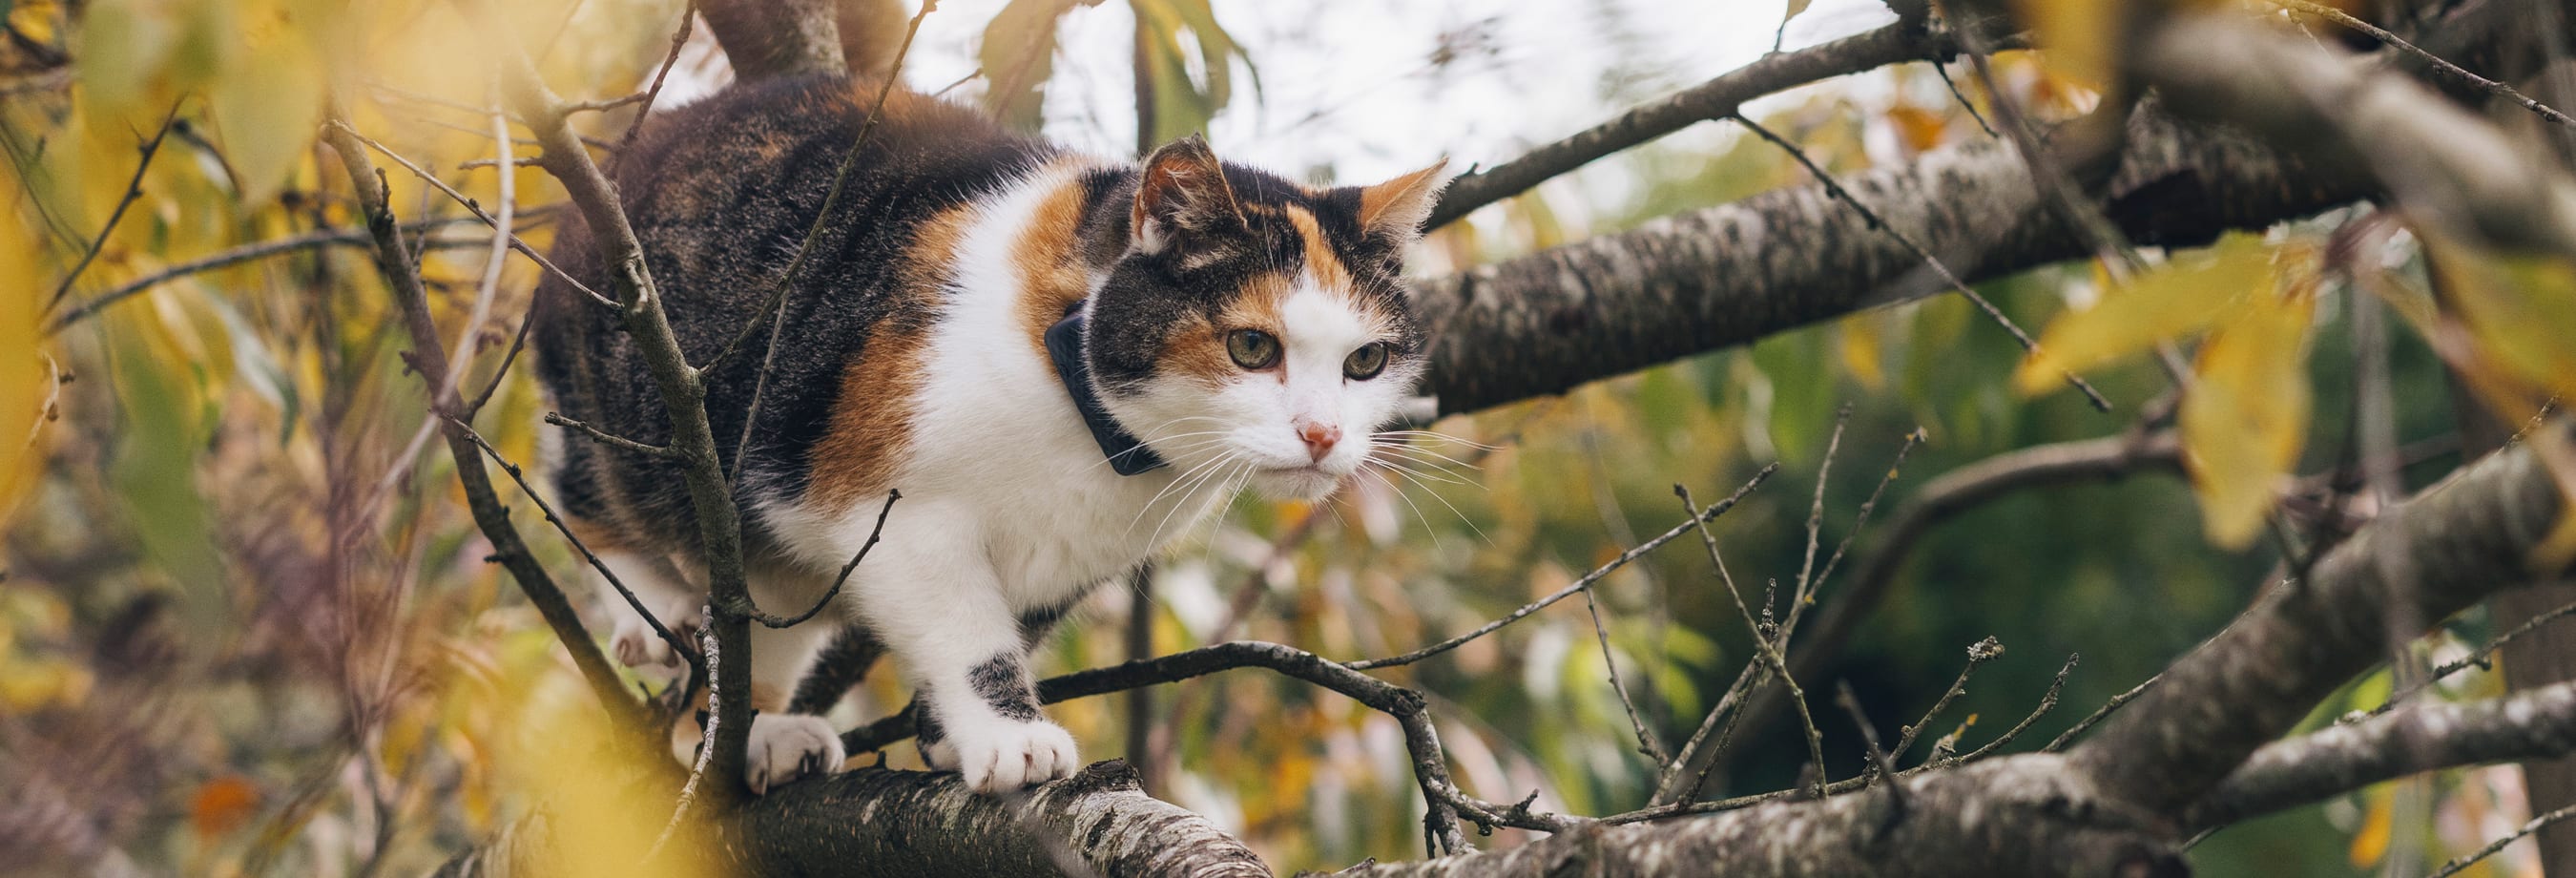 Katze spaziert im Baum